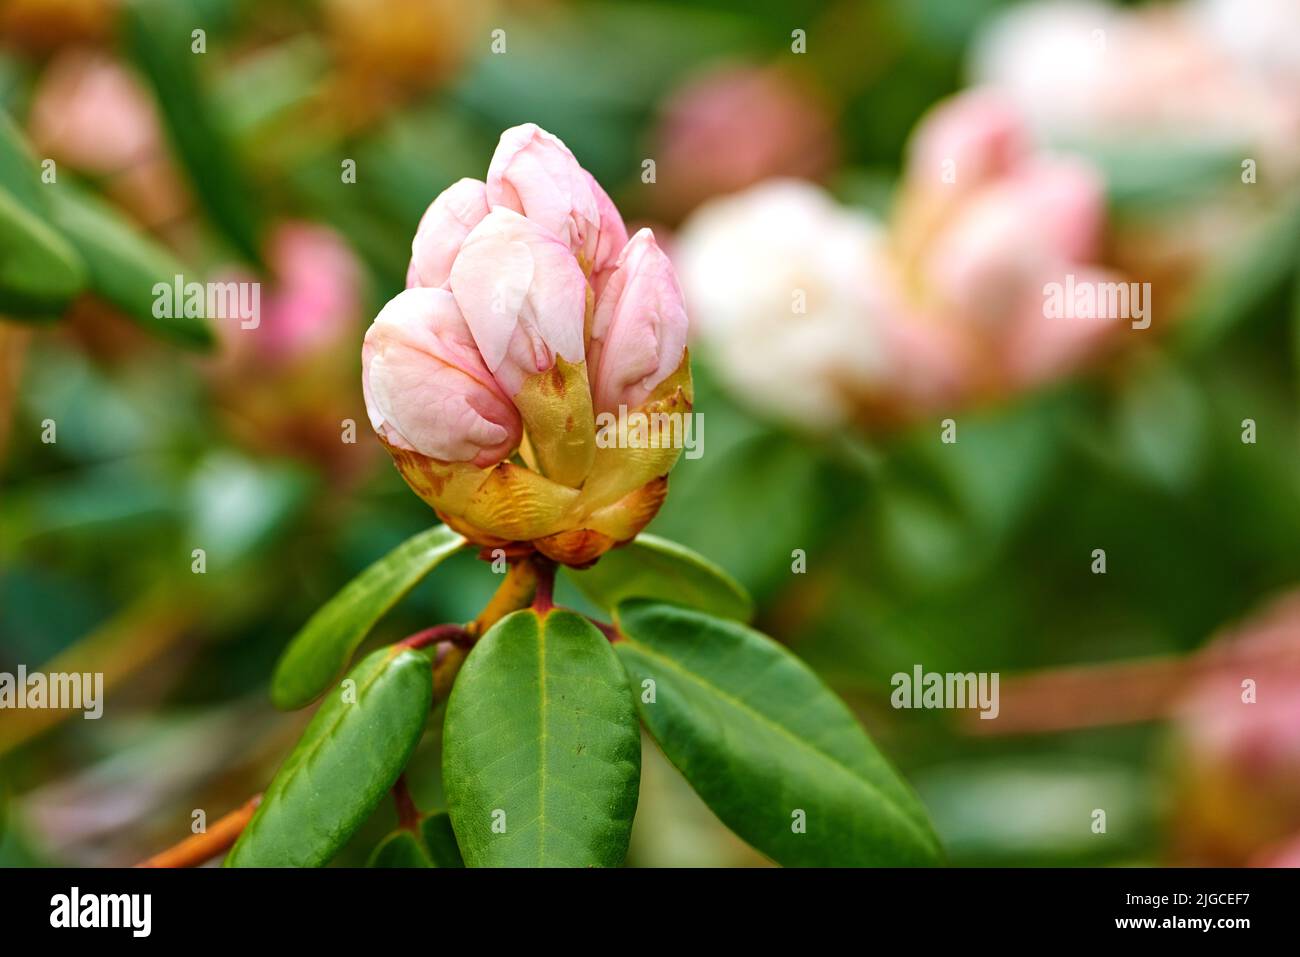 Le Rhododendron est un genre de 1 024 espèces de plantes ligneuses de la famille des heath, soit à feuilles persistantes, soit à feuilles caduques, et se trouve principalement en Asie, bien qu'il soit Banque D'Images